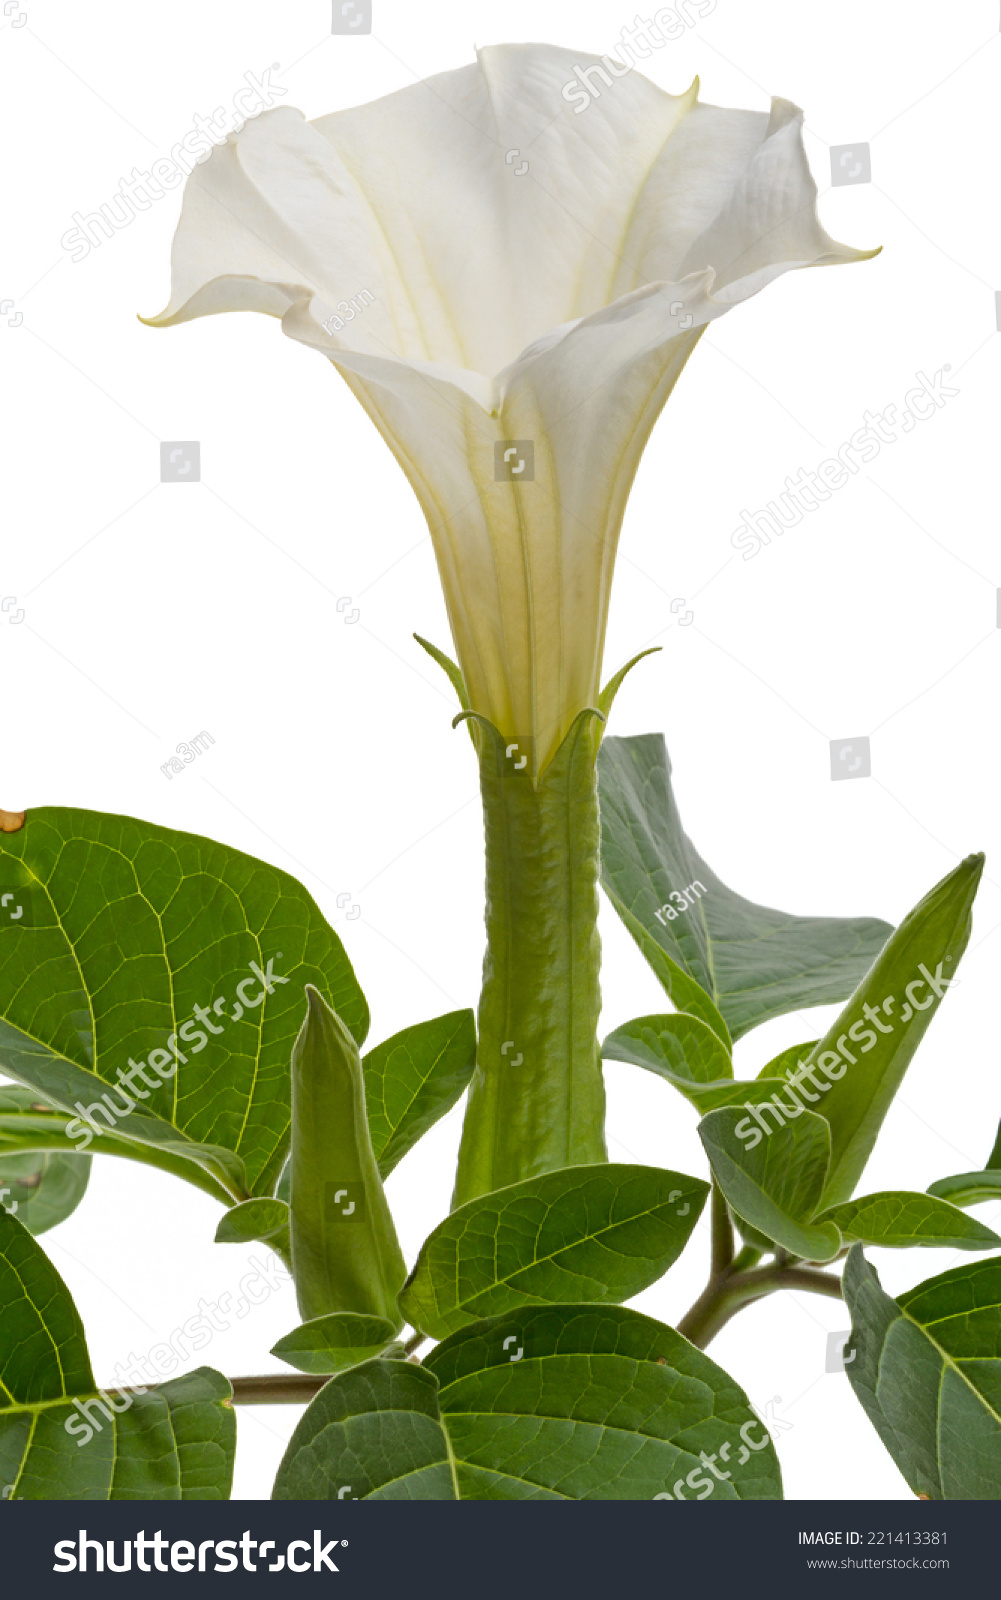 曼陀罗--有毒高草本植物,叶子大,巨大的白色芳